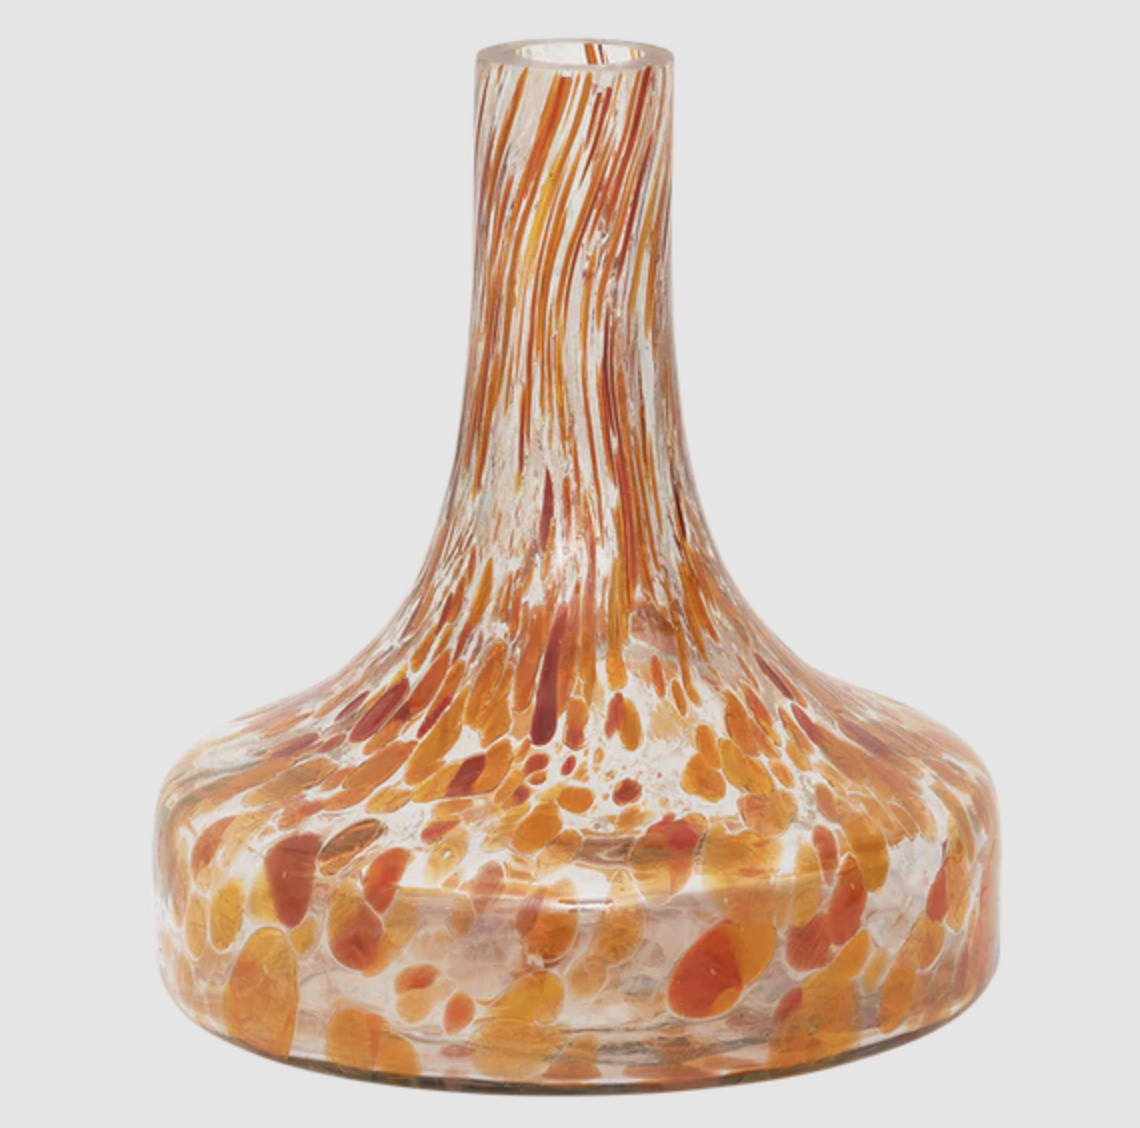 Vase en verre recyclé orange et blanc moucheté  Maljakko * Urban Nature Culture